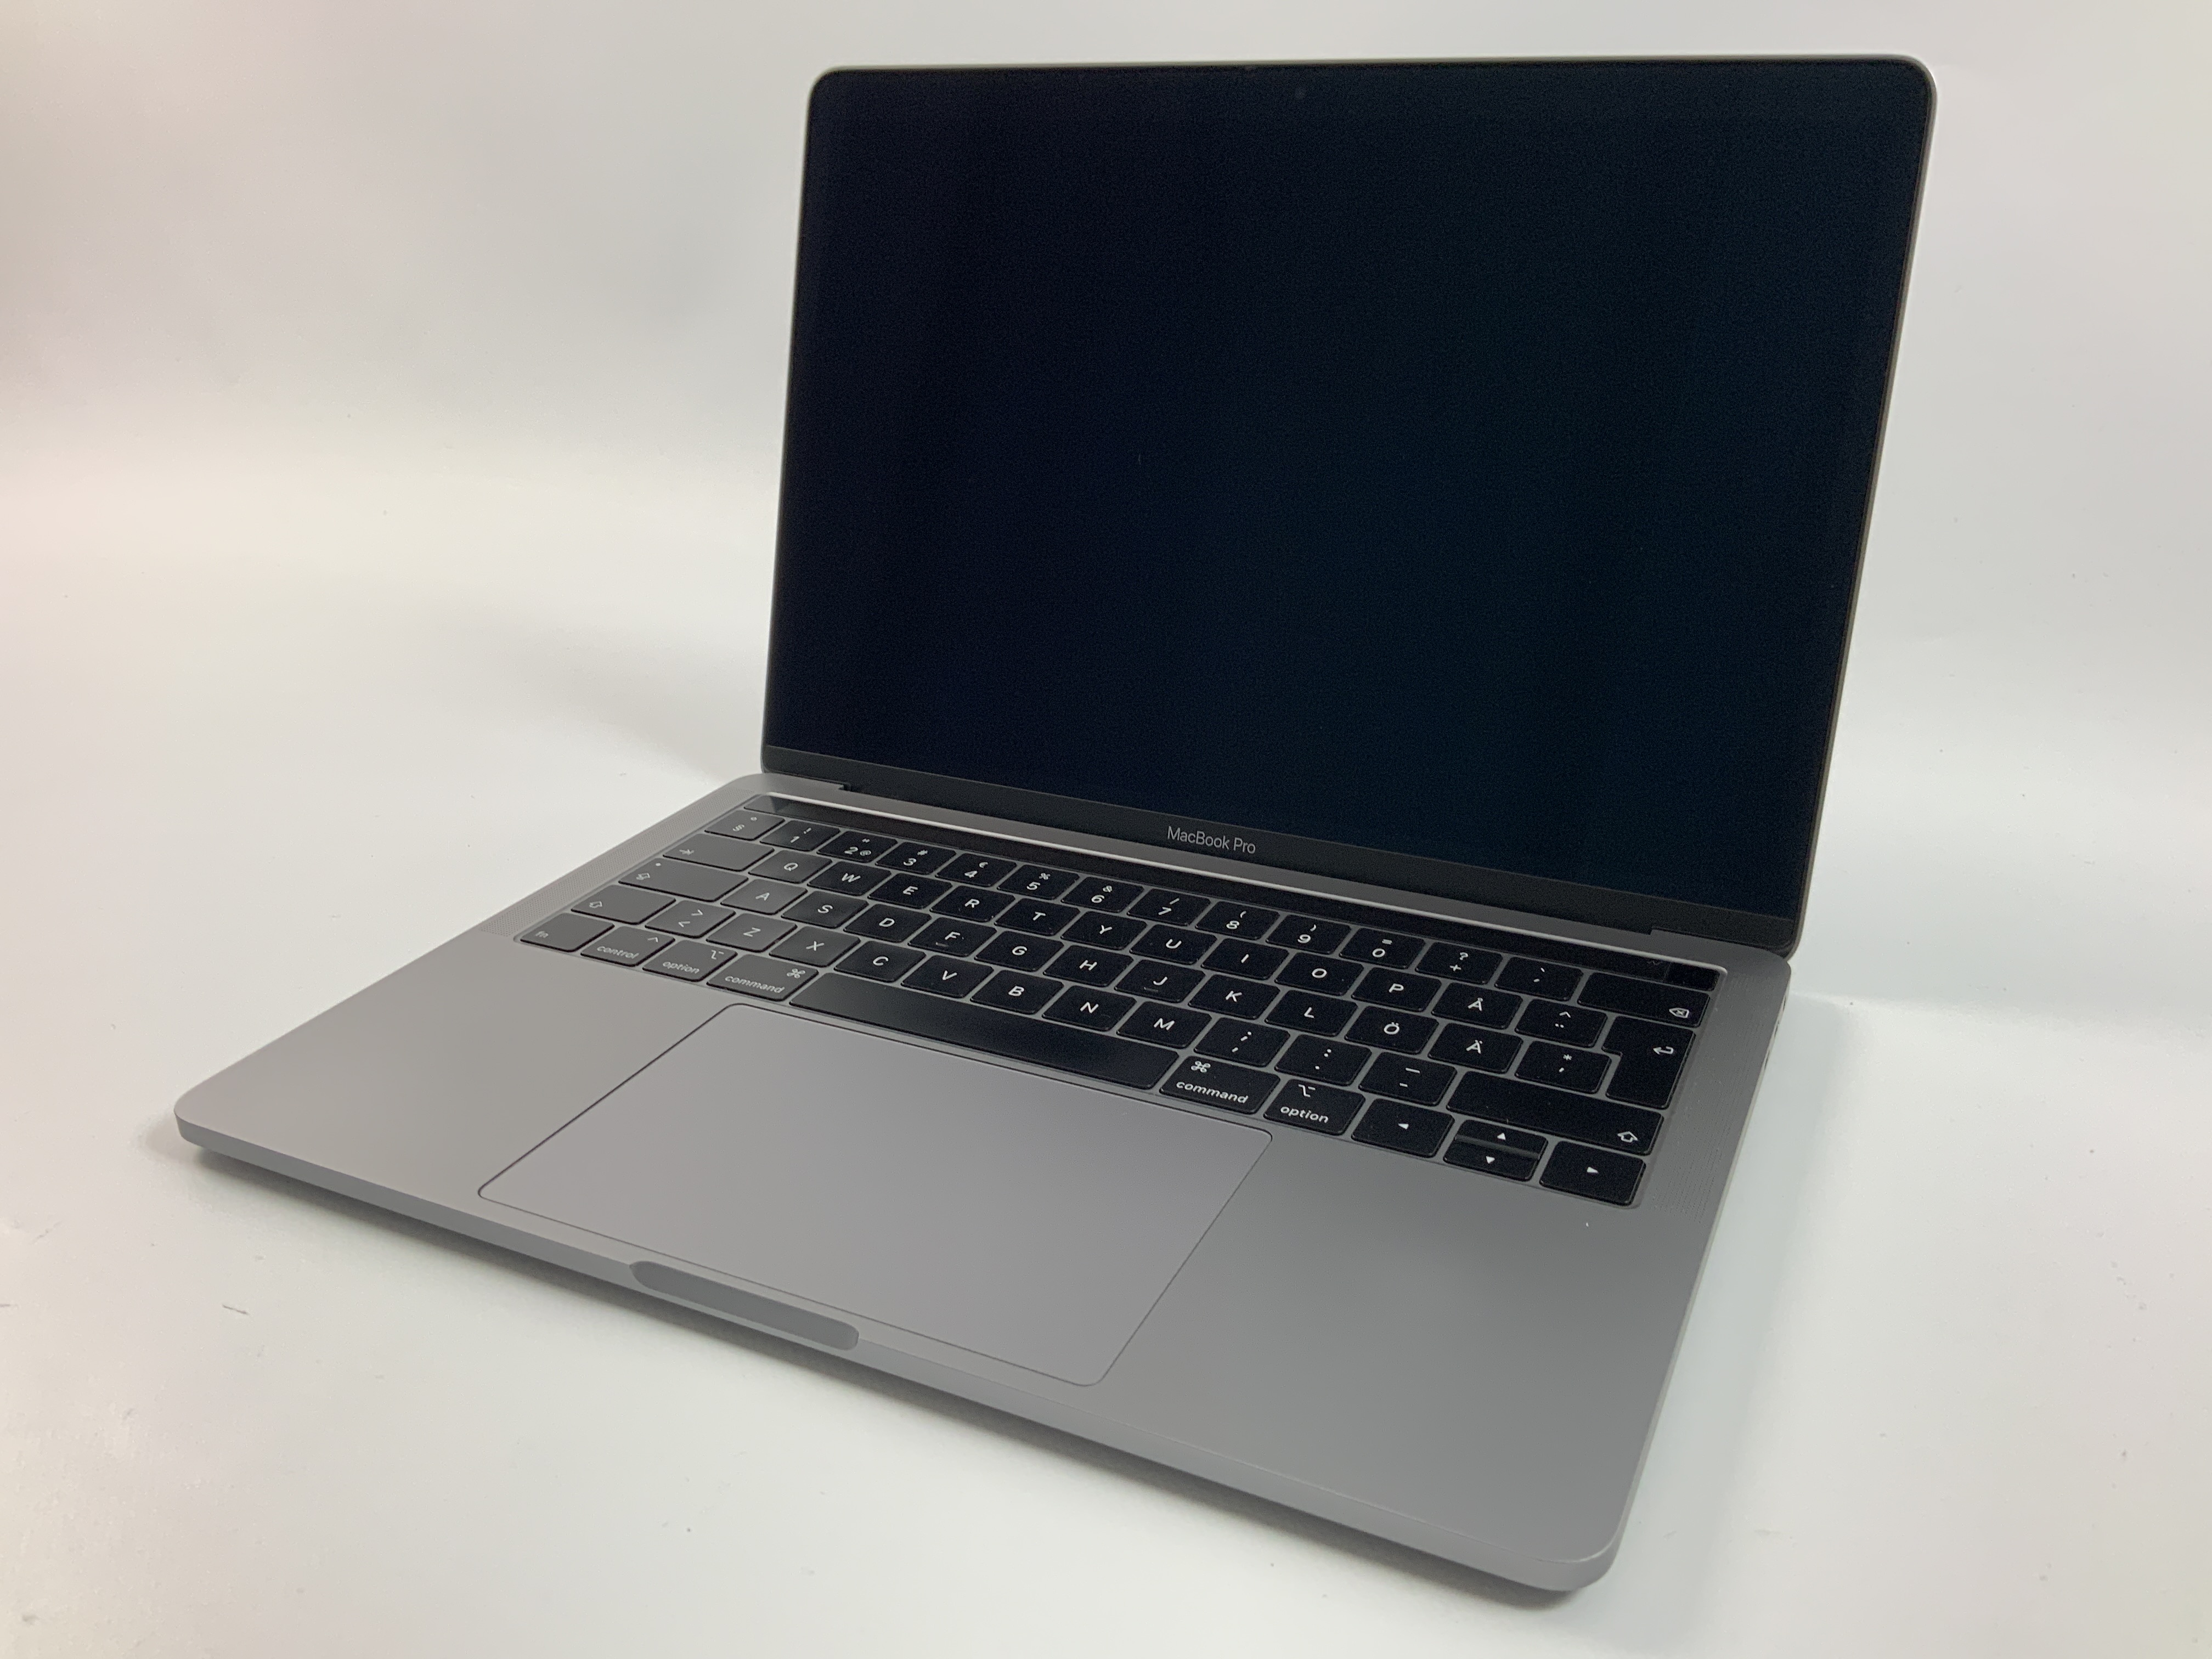 MacBook Pro 13" 4TBT Mid 2019 (Intel Quad-Core i7 2.8 GHz 16 GB RAM 256 GB SSD), Space Gray, Intel Quad-Core i7 2.8 GHz, 16 GB RAM, 256 GB SSD, Kuva 1